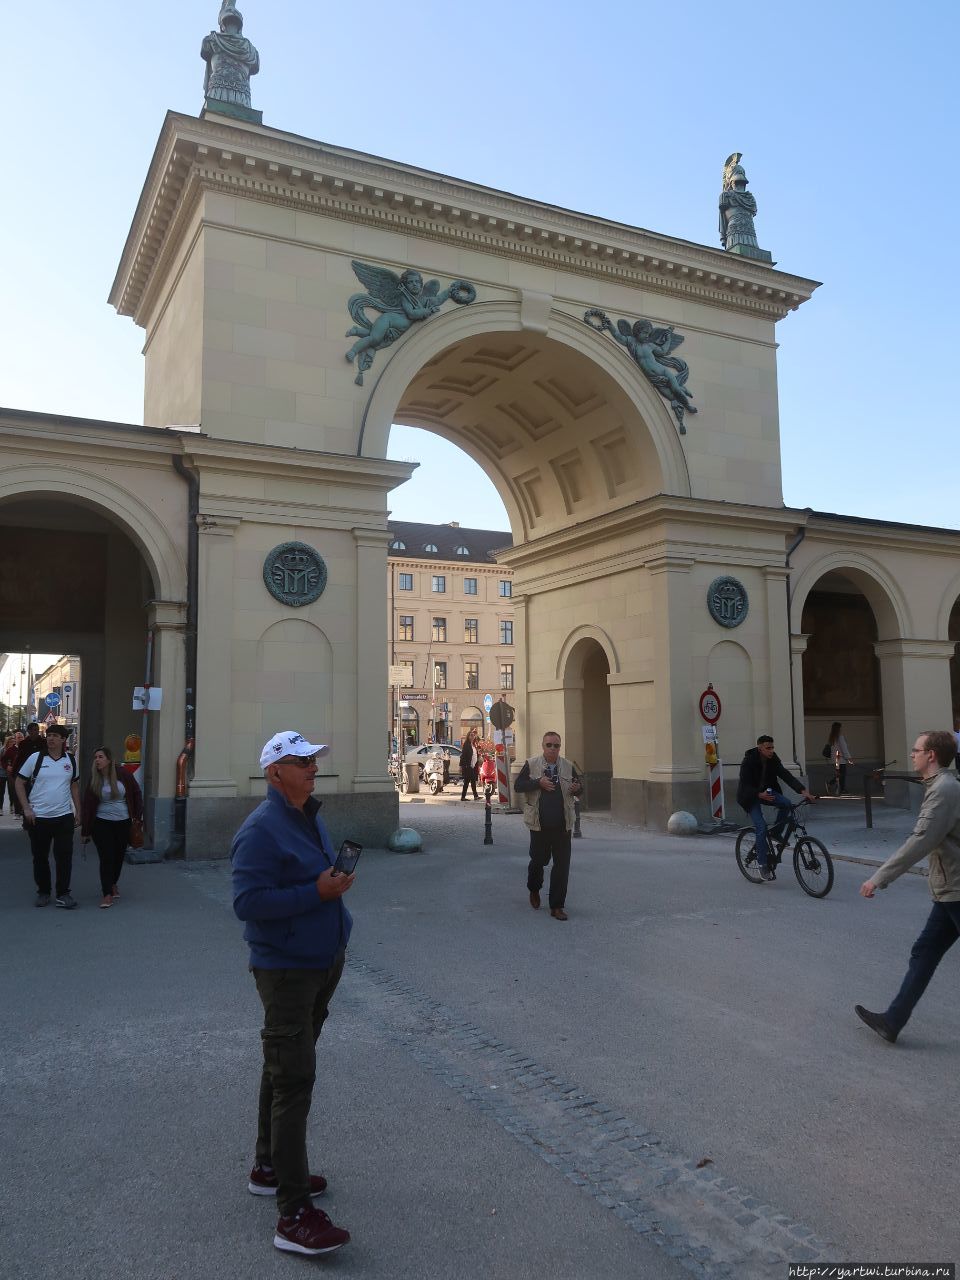 Ворота в парк Хофтгартен  на площади Одеонплац. Работа известного мюнхенского архитектора. Мюнхен, Германия